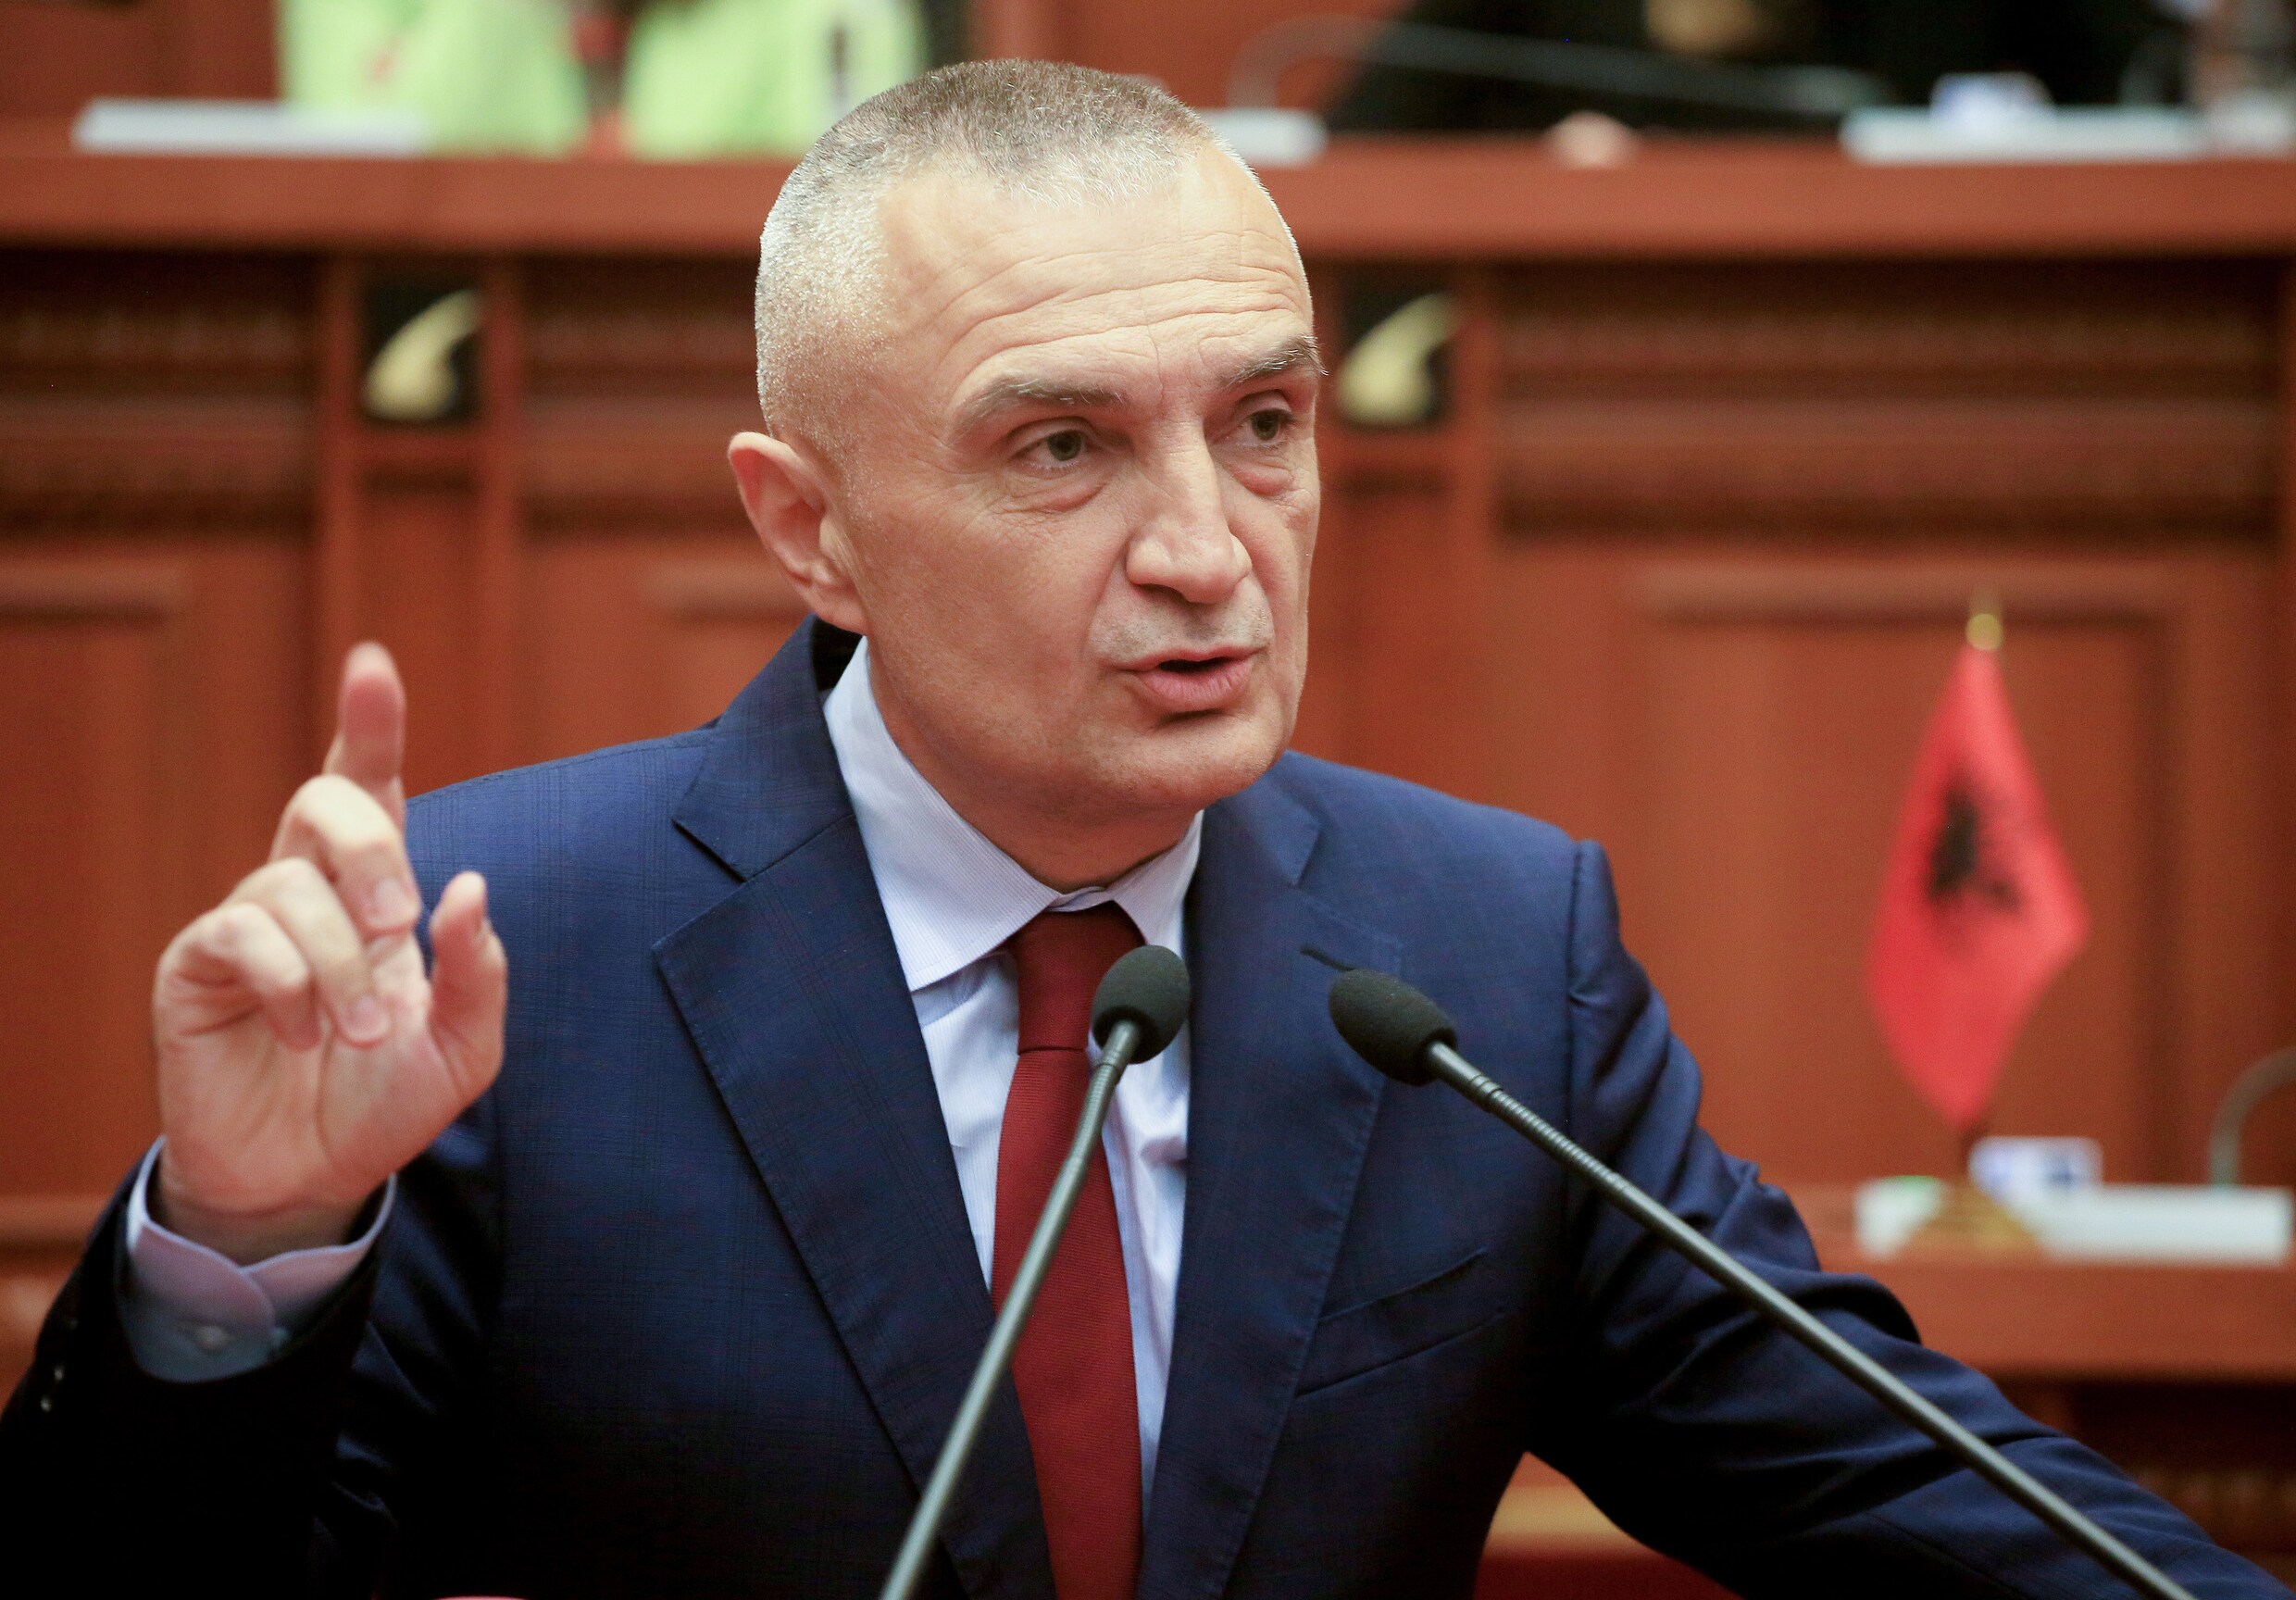 Albanees parlement kiest Ilir Meta tot nieuwe president